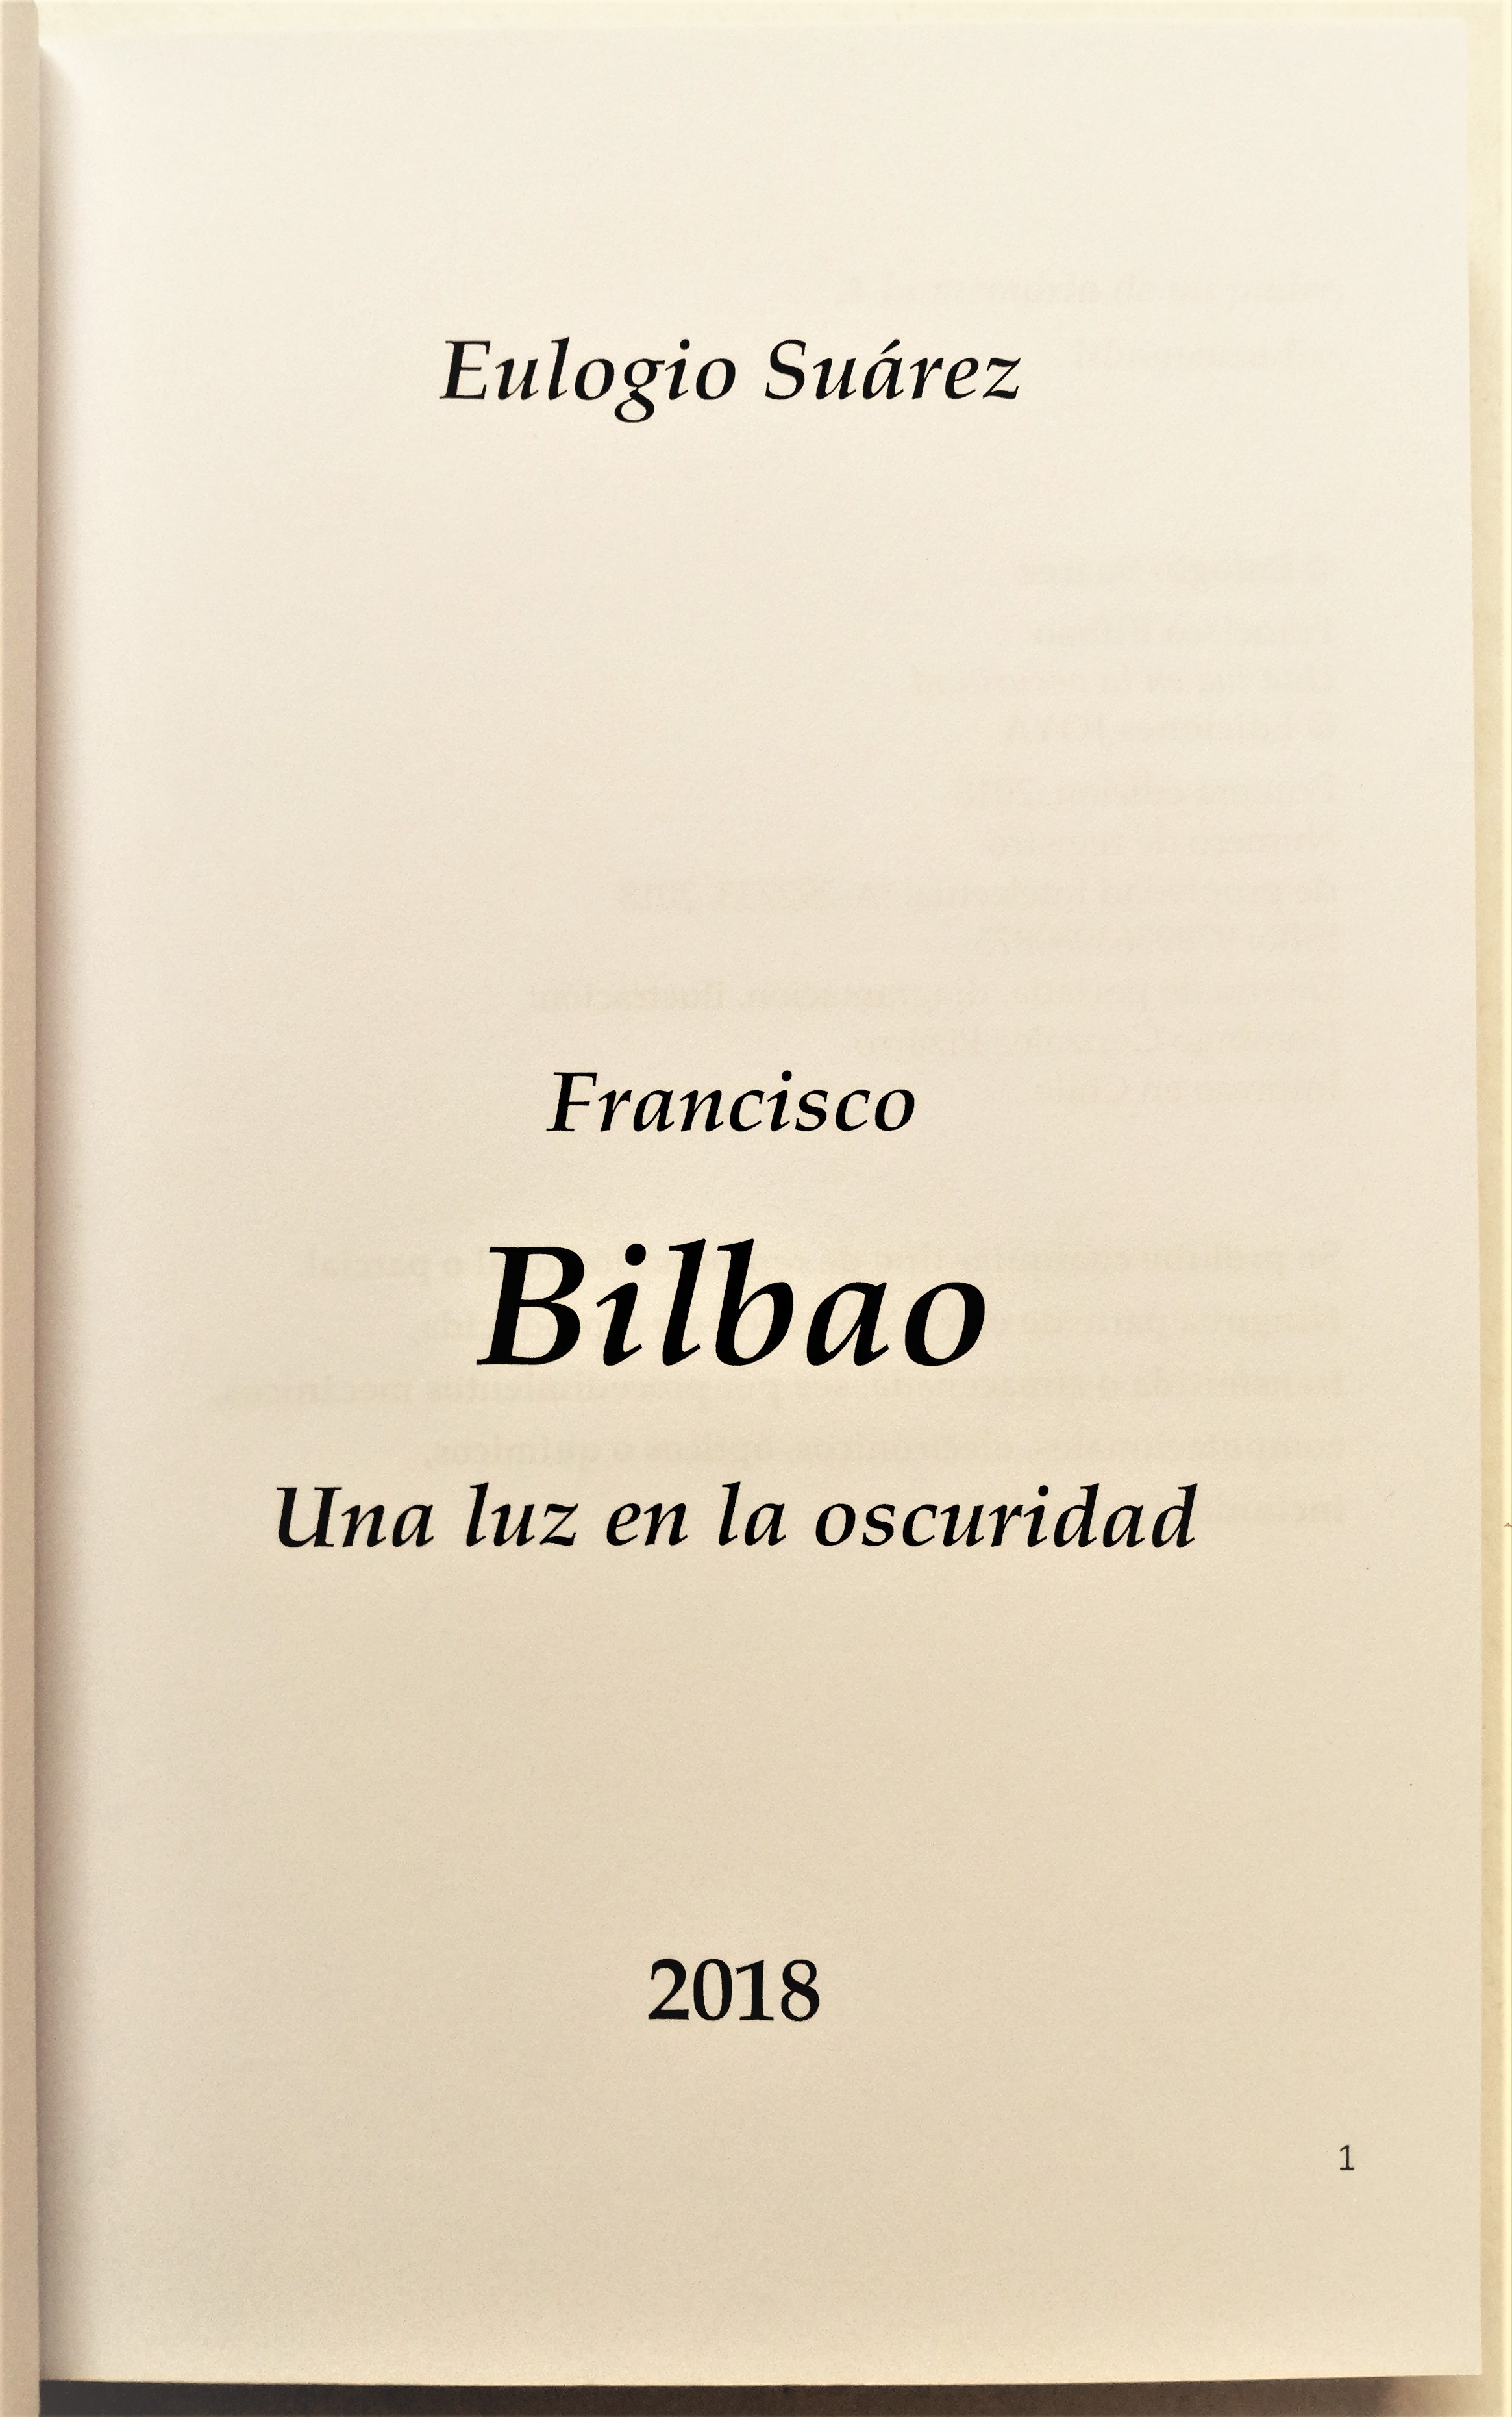 Eulogio Suarez - Francisco Bilbao, una luz en la oscuridad